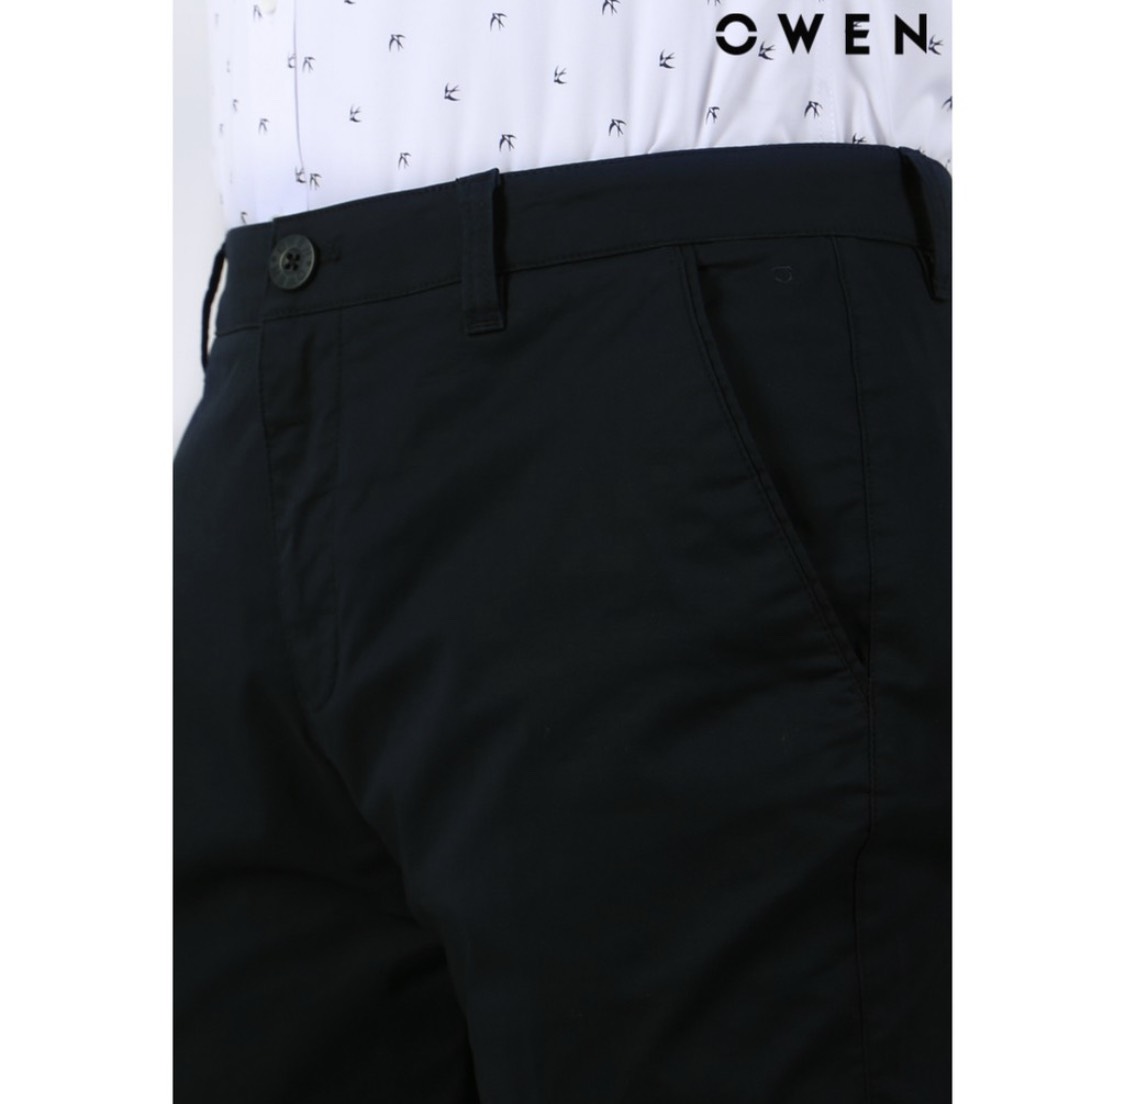 OWEN - Quần kaki nam Owen chất thô giấy mềm mại co dãn màu đen 21993/22006